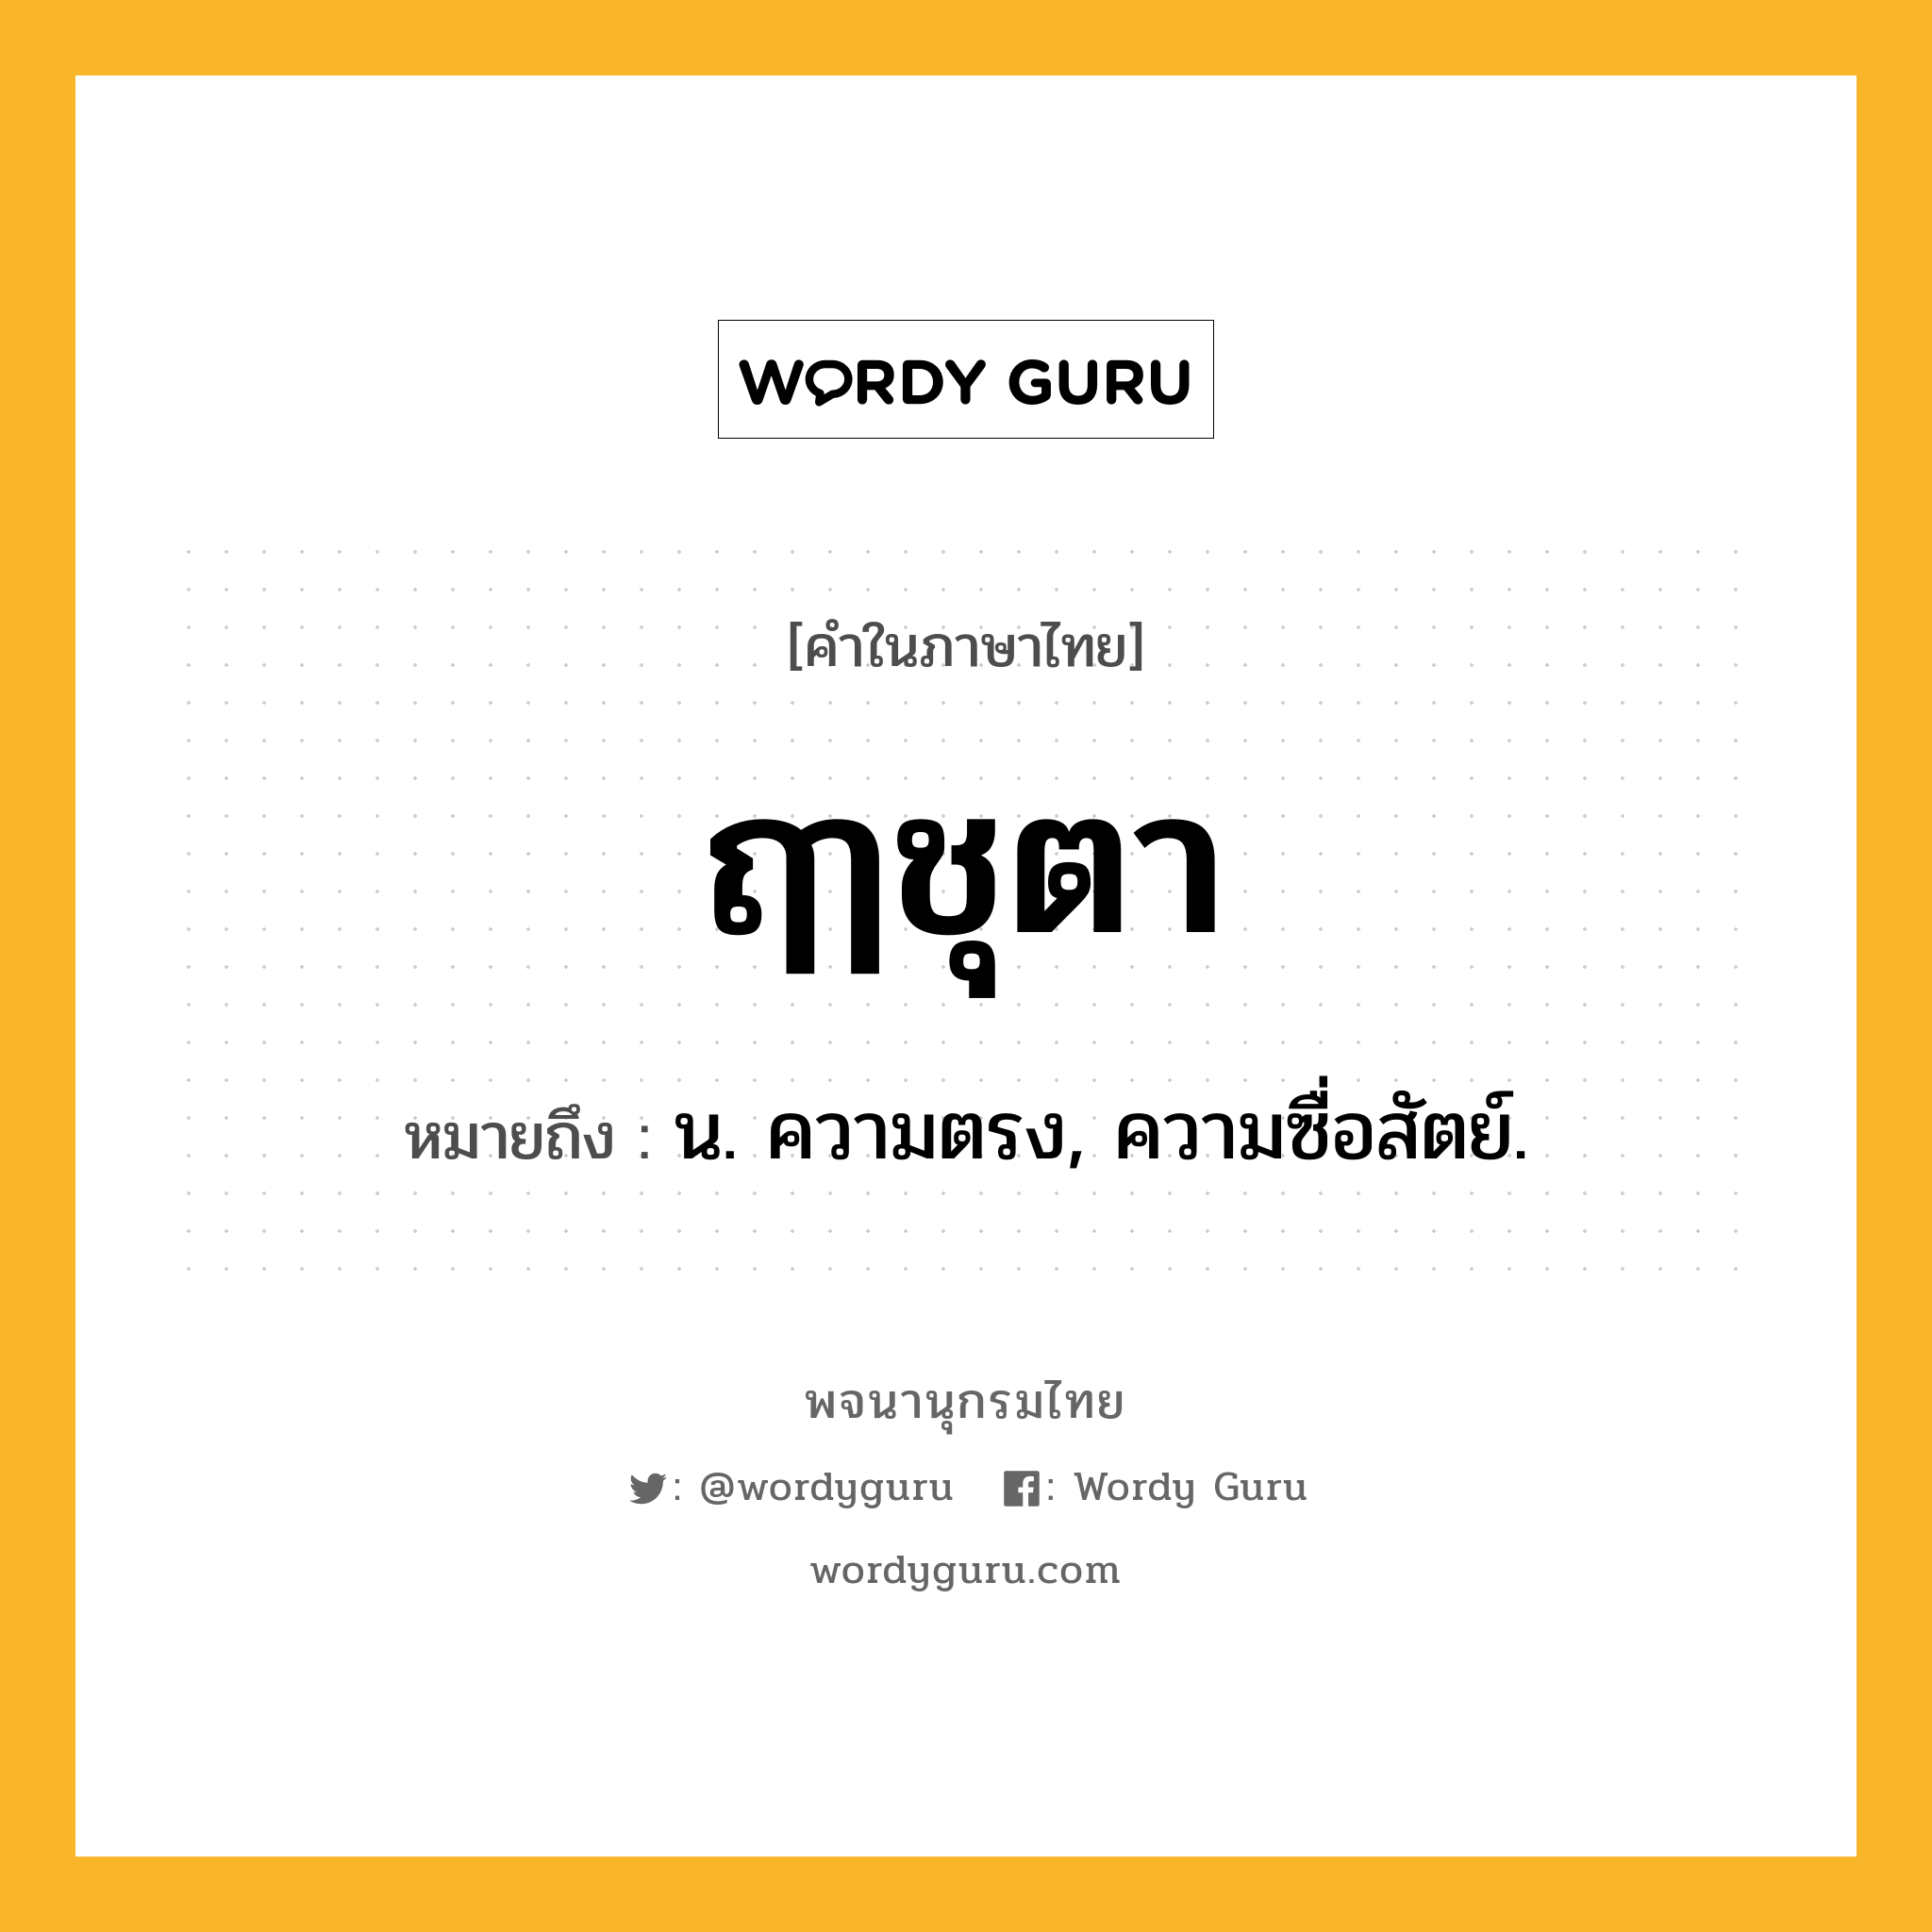 ฤๅชุตา ความหมาย หมายถึงอะไร?, คำในภาษาไทย ฤๅชุตา หมายถึง น. ความตรง, ความซื่อสัตย์.